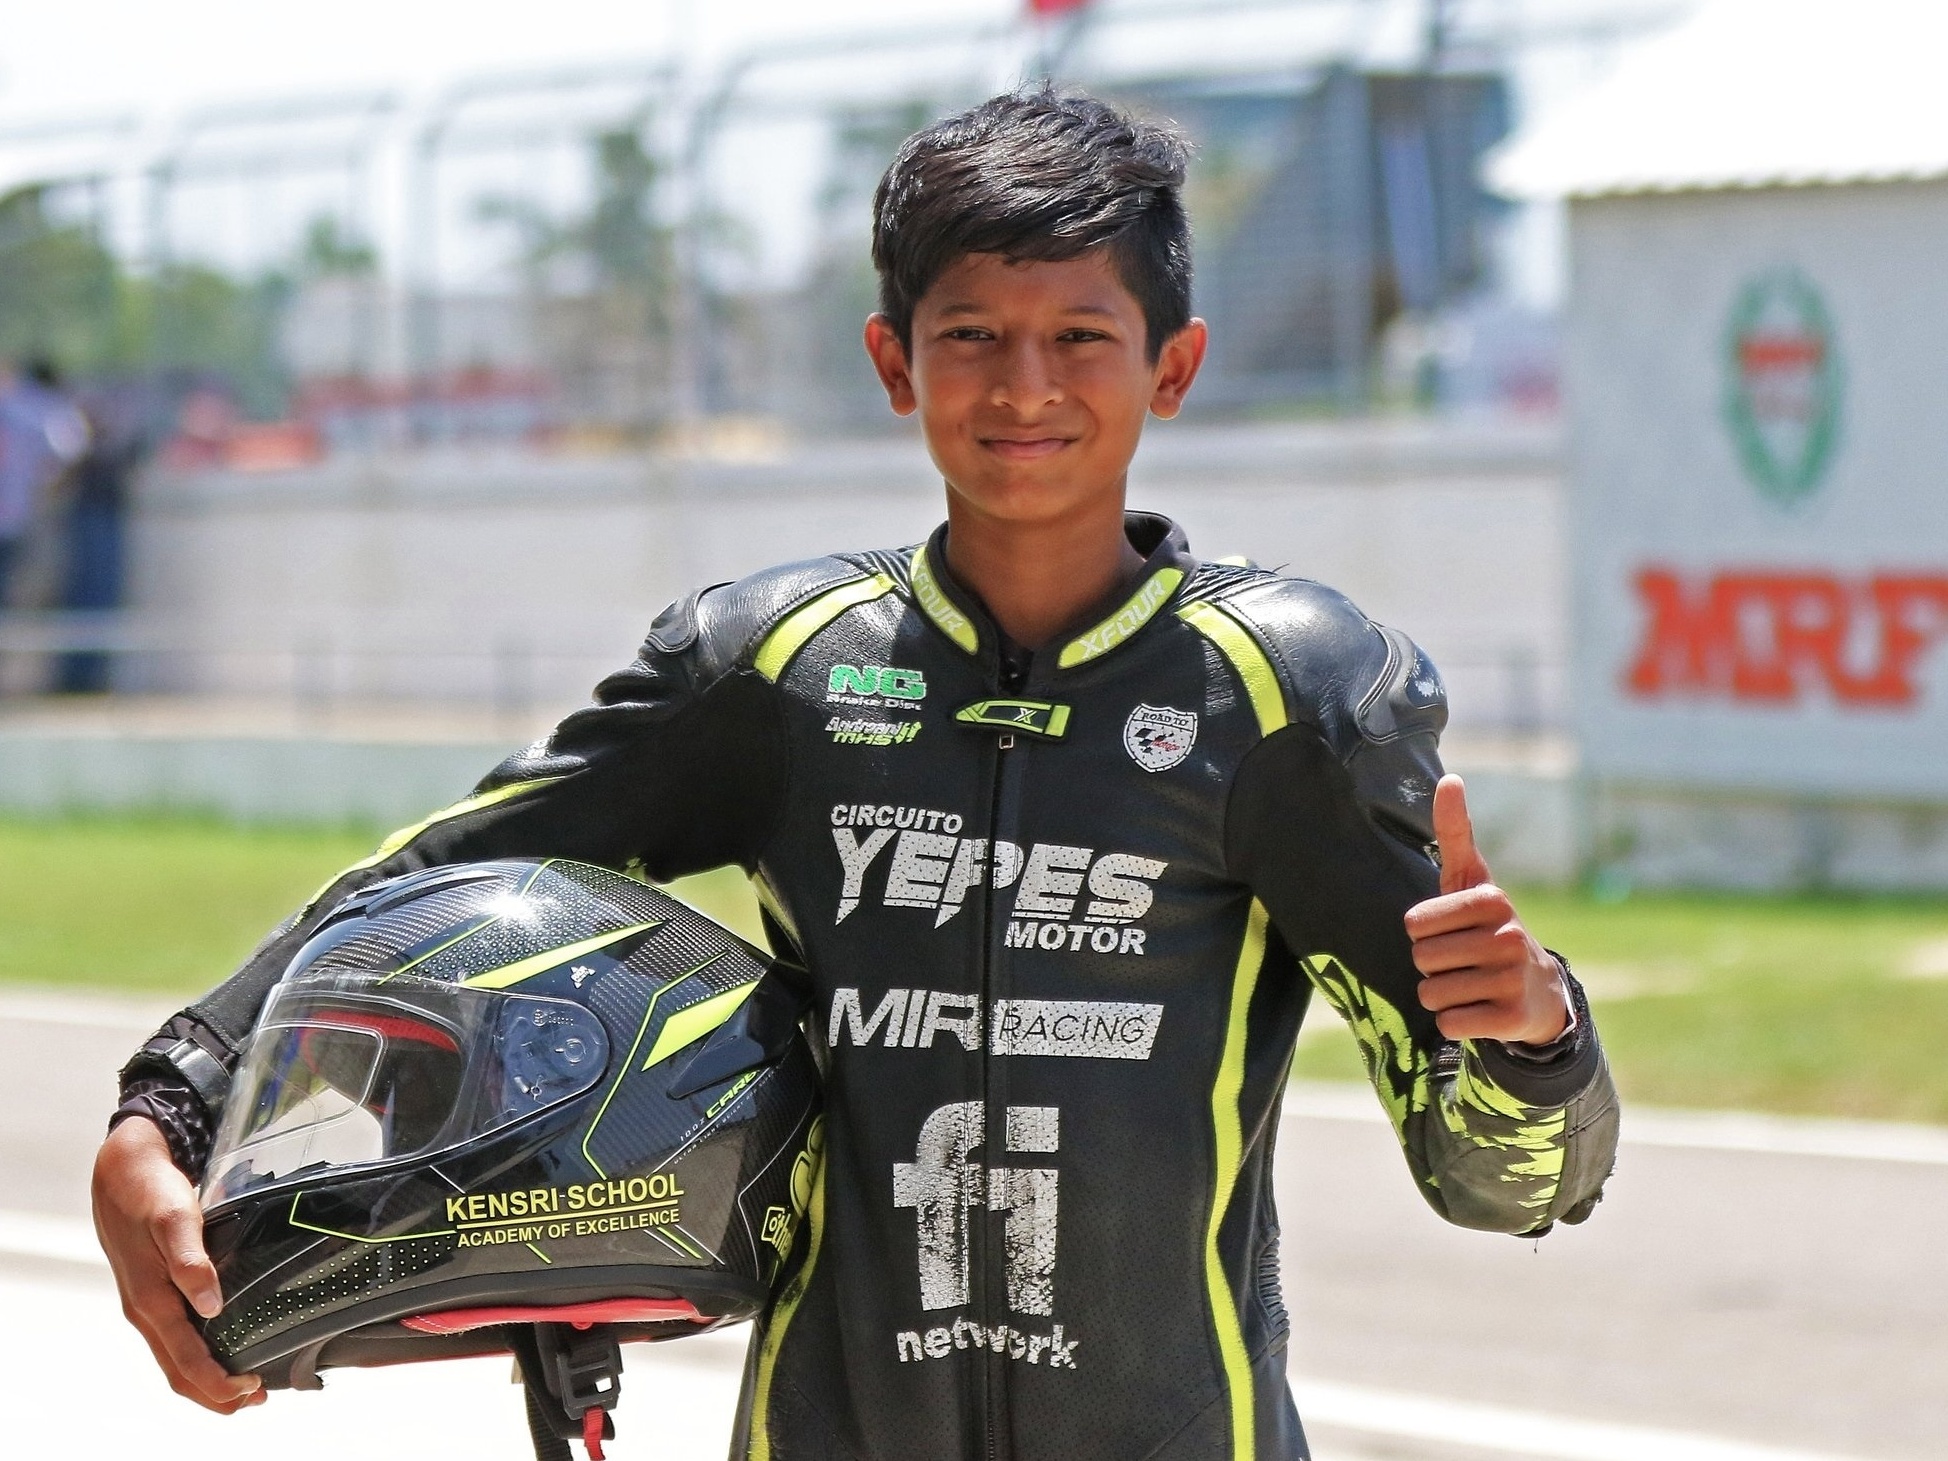 Piloto indiano de 13 anos morre após acidente em corrida de moto